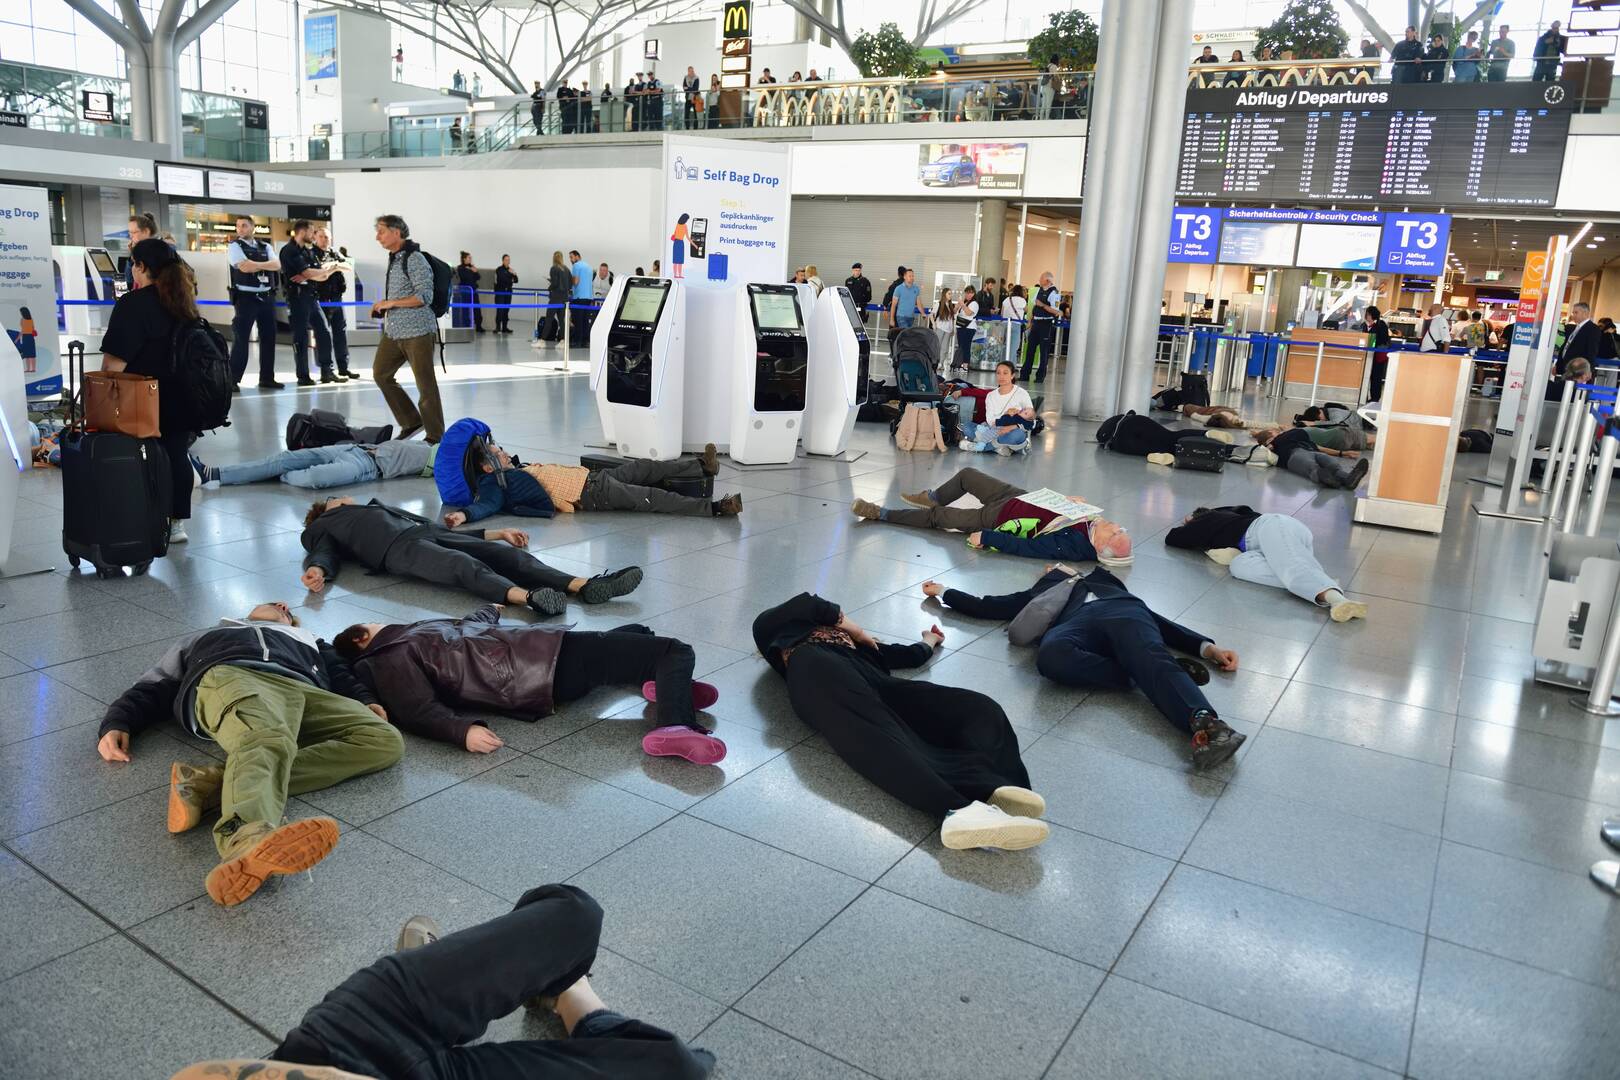 احتجاجات الجيل الاخير في مطار ألماني، 18 مايو